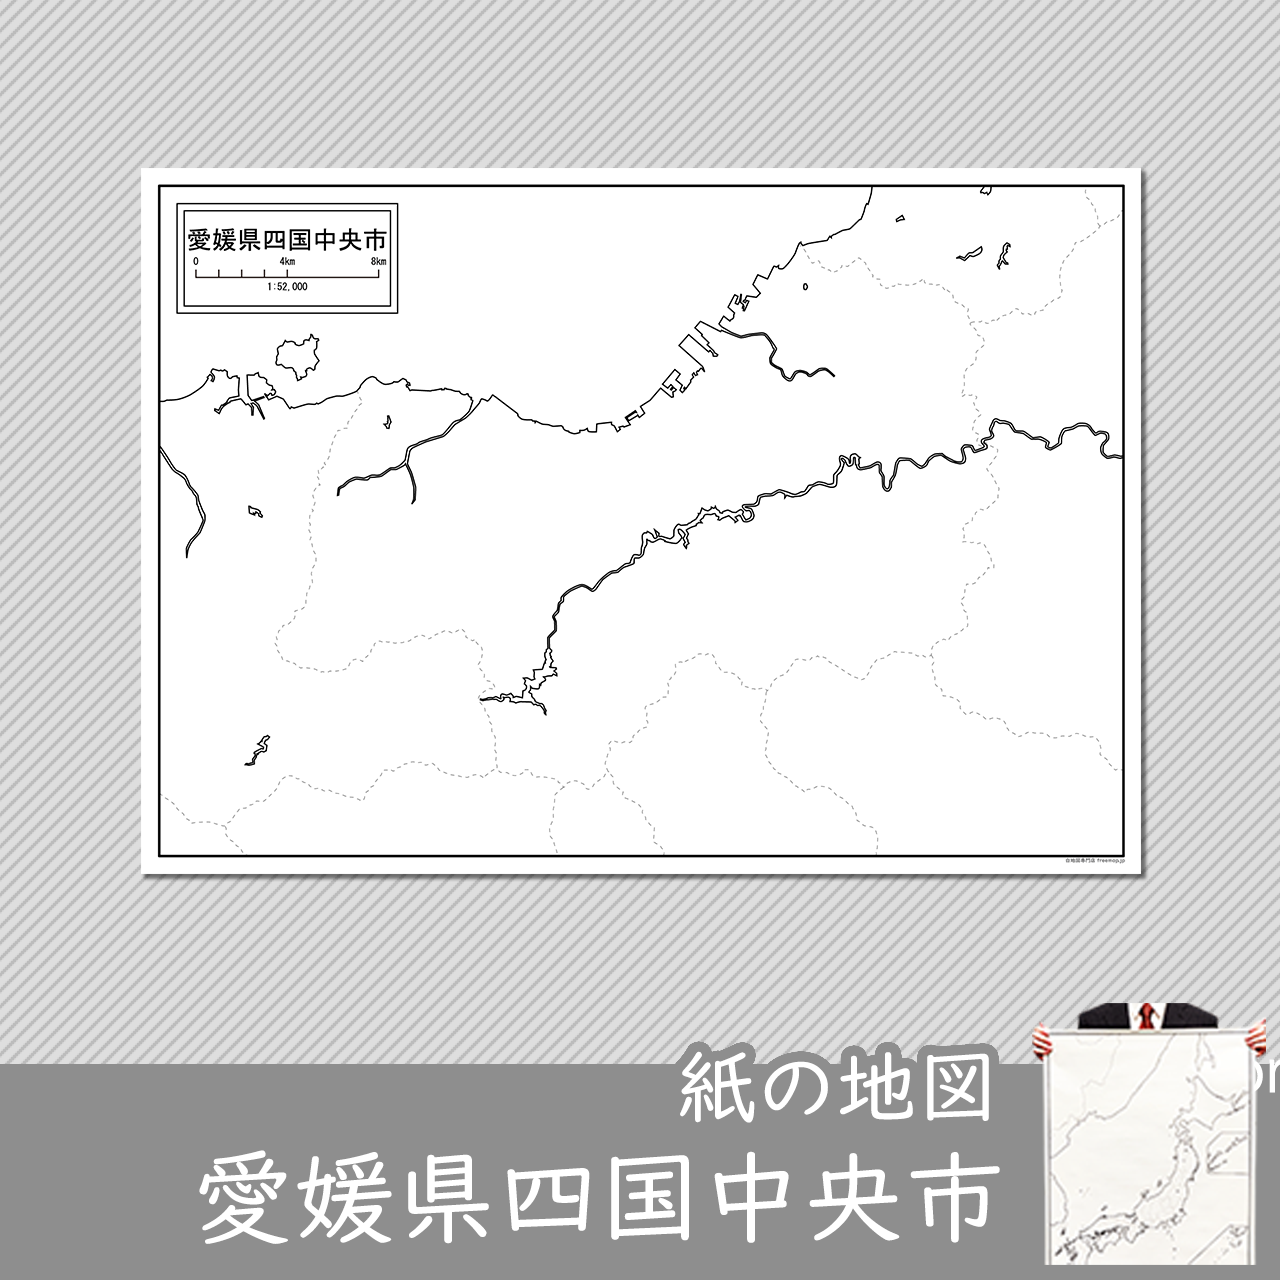 四国中央市の紙の白地図のサムネイル